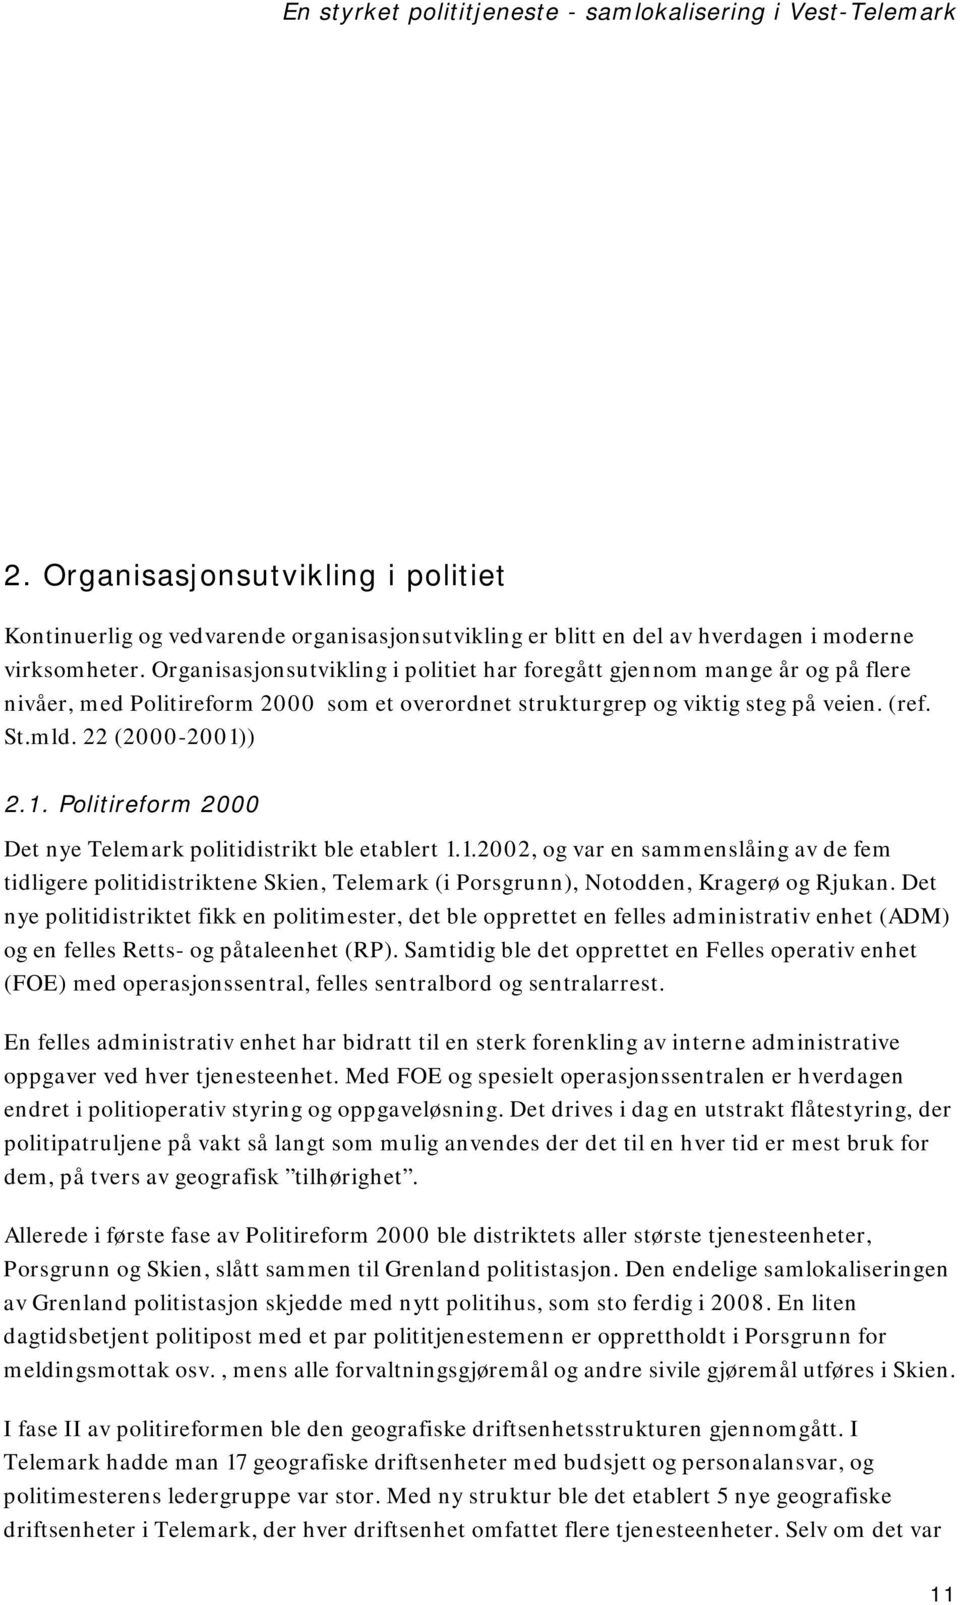 ) 2.1. Politireform 2000 Det nye Telemark politidistrikt ble etablert 1.1.2002, og var en sammenslåing av de fem tidligere politidistriktene Skien, Telemark (i Porsgrunn), Notodden, Kragerø og Rjukan.